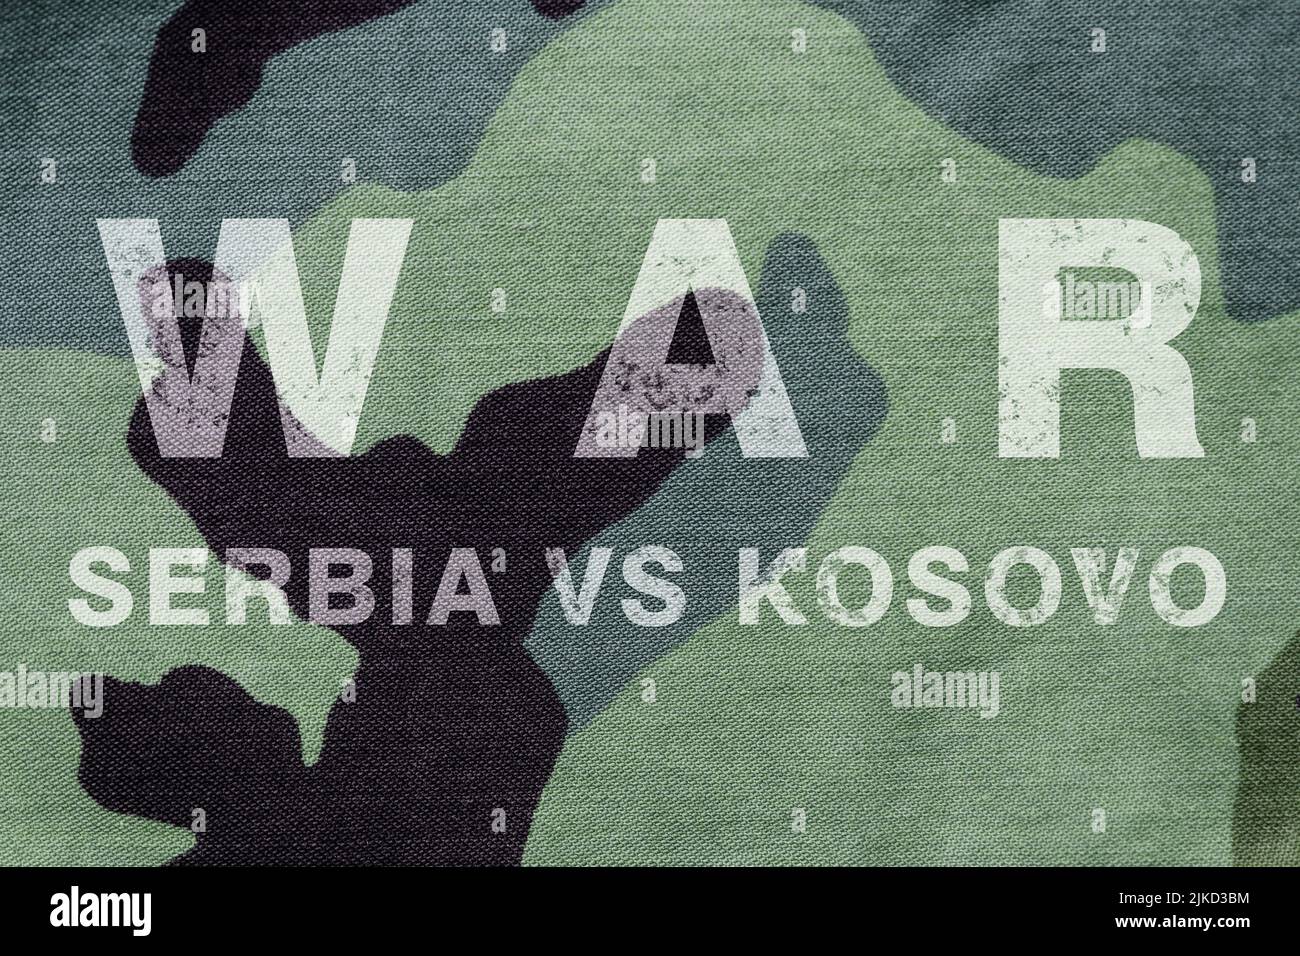 War Kosovo vs Serbia ,  War between Kosovo  and Serbia,  War Serbia Kosovo in world war crisis concept Stock Photo